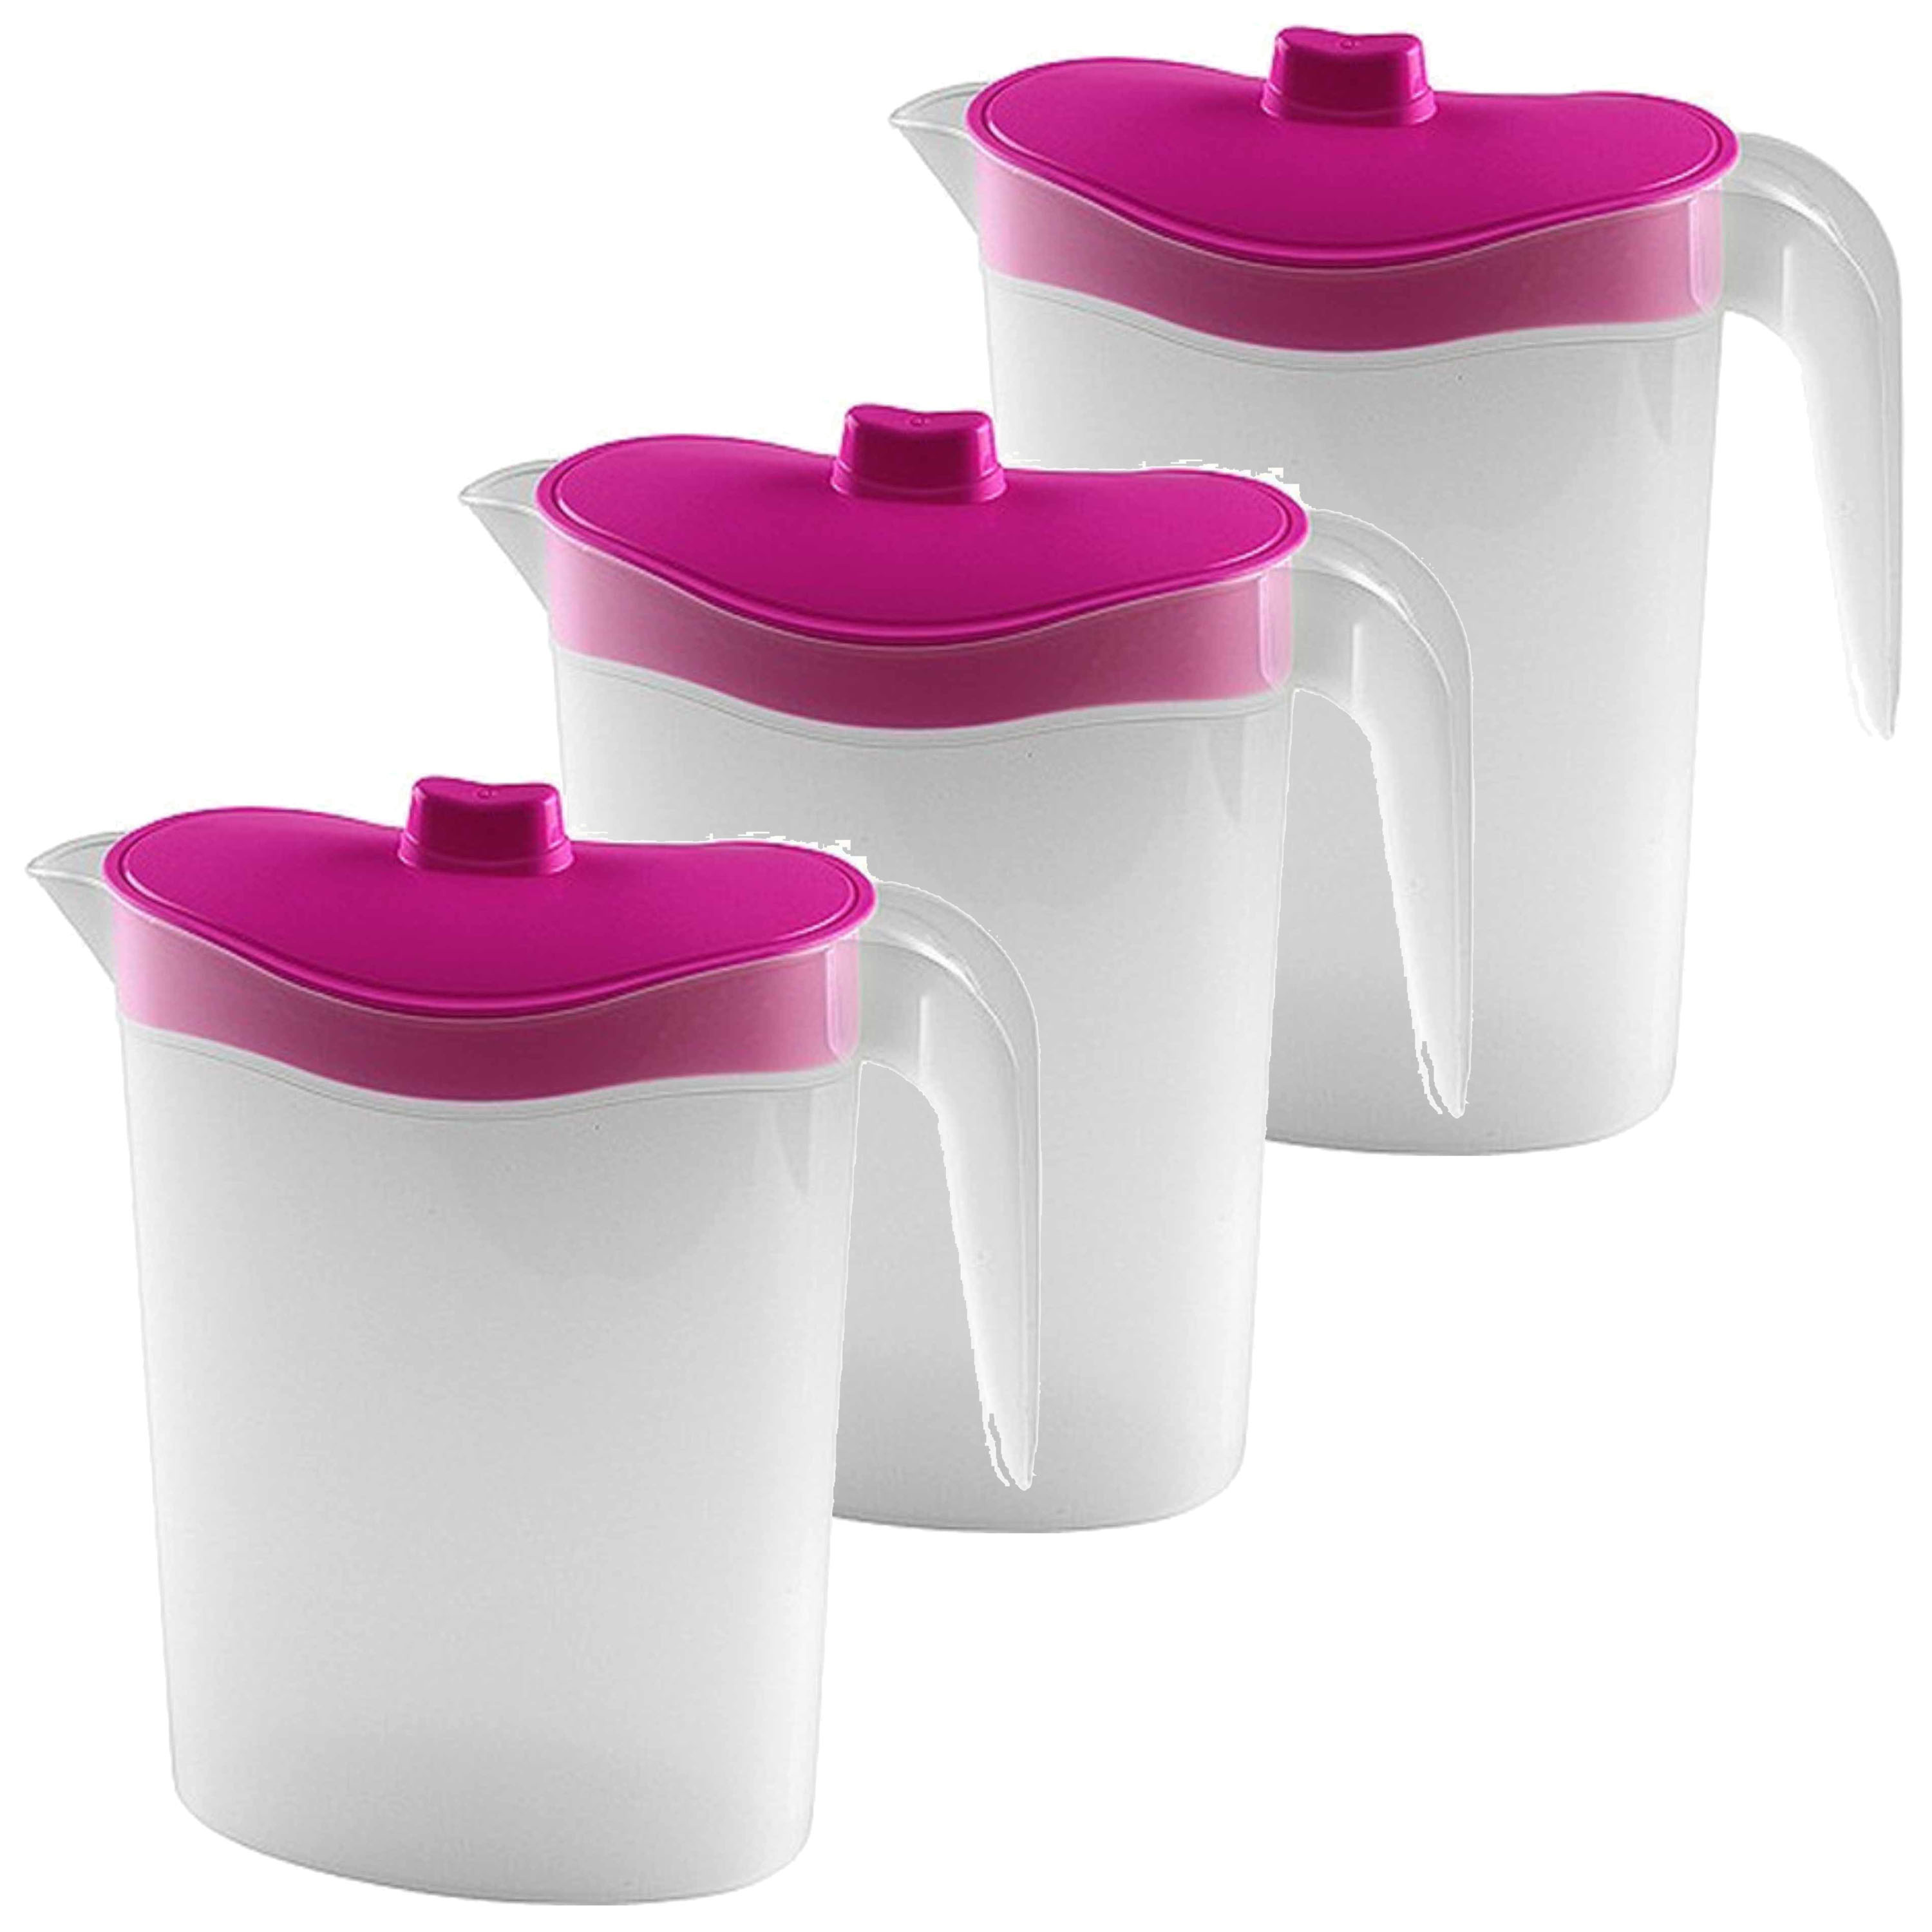 4x Smalle kunststof koelkast schenkkannen 1,5 liter met roze deksel